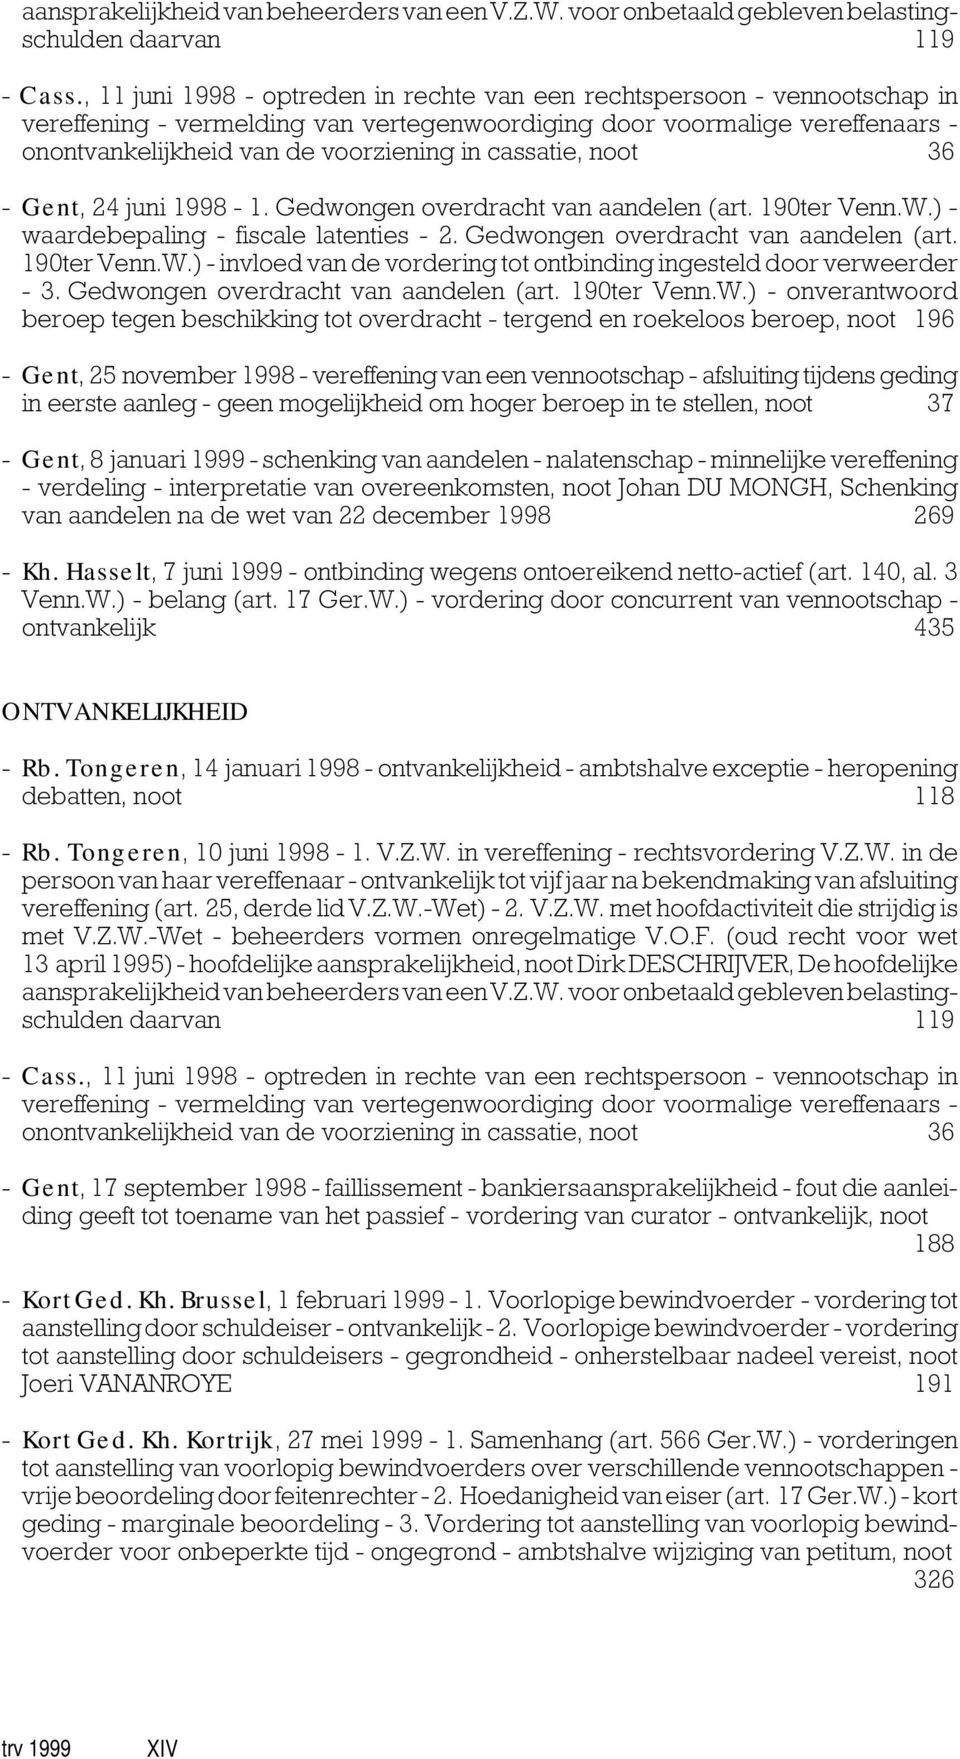 cassatie, noot 36 - Gent, 24 juni 1998-1. Gedwongen overdracht van aandelen (art. 190ter Venn.W.) - waardebepaling - fiscale latenties - 2. Gedwongen overdracht van aandelen (art. 190ter Venn.W.) - invloed van de vordering tot ontbinding ingesteld door verweerder - 3.